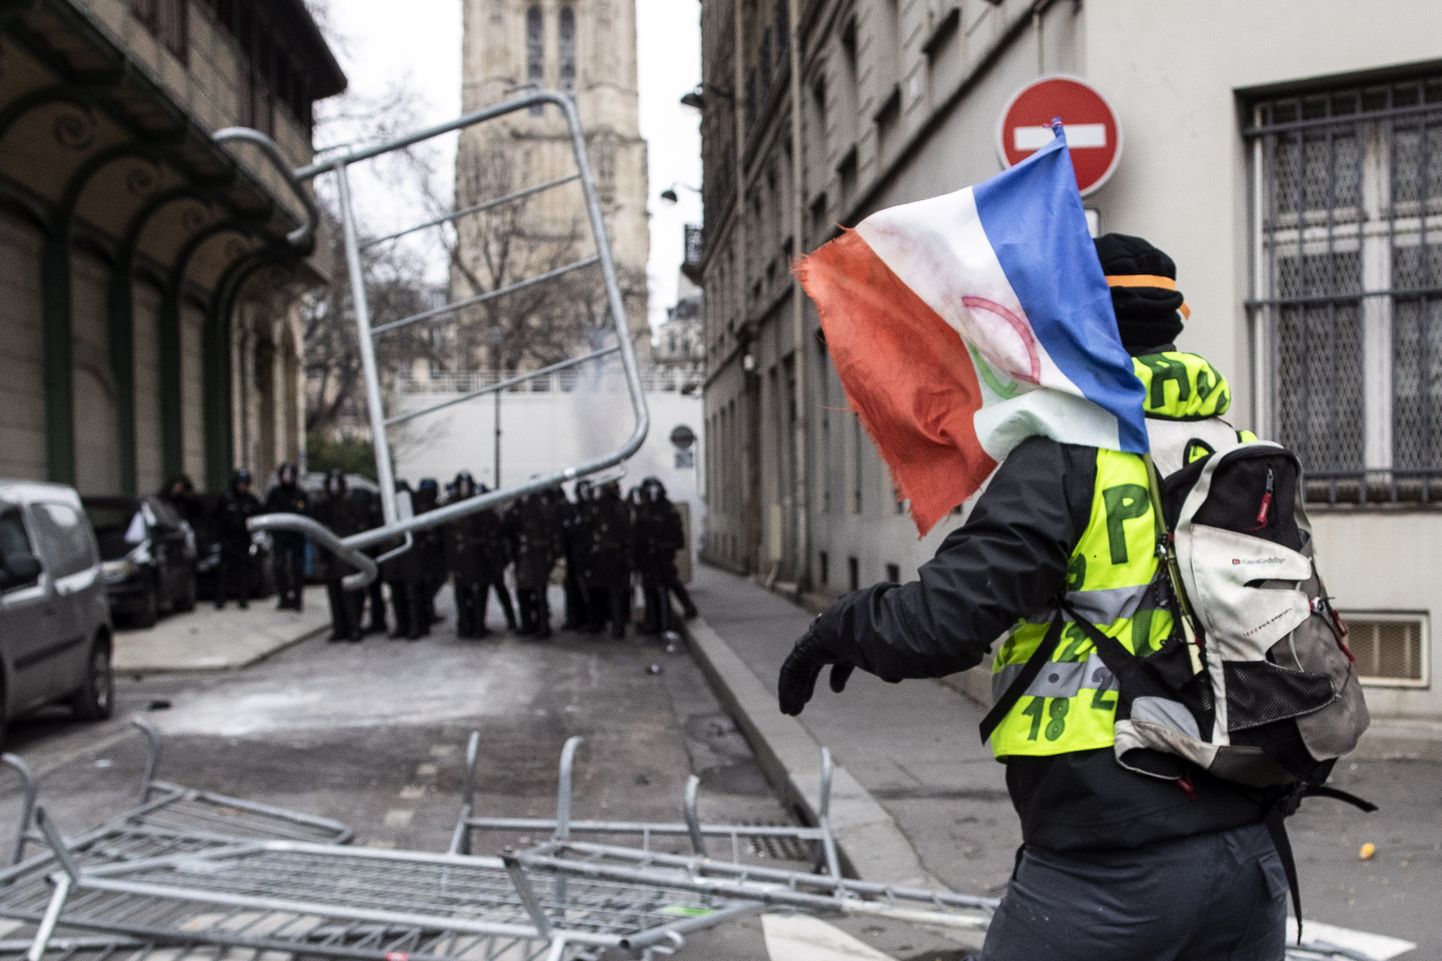 Во Франции продолжаются протесты "желтых жилетов"